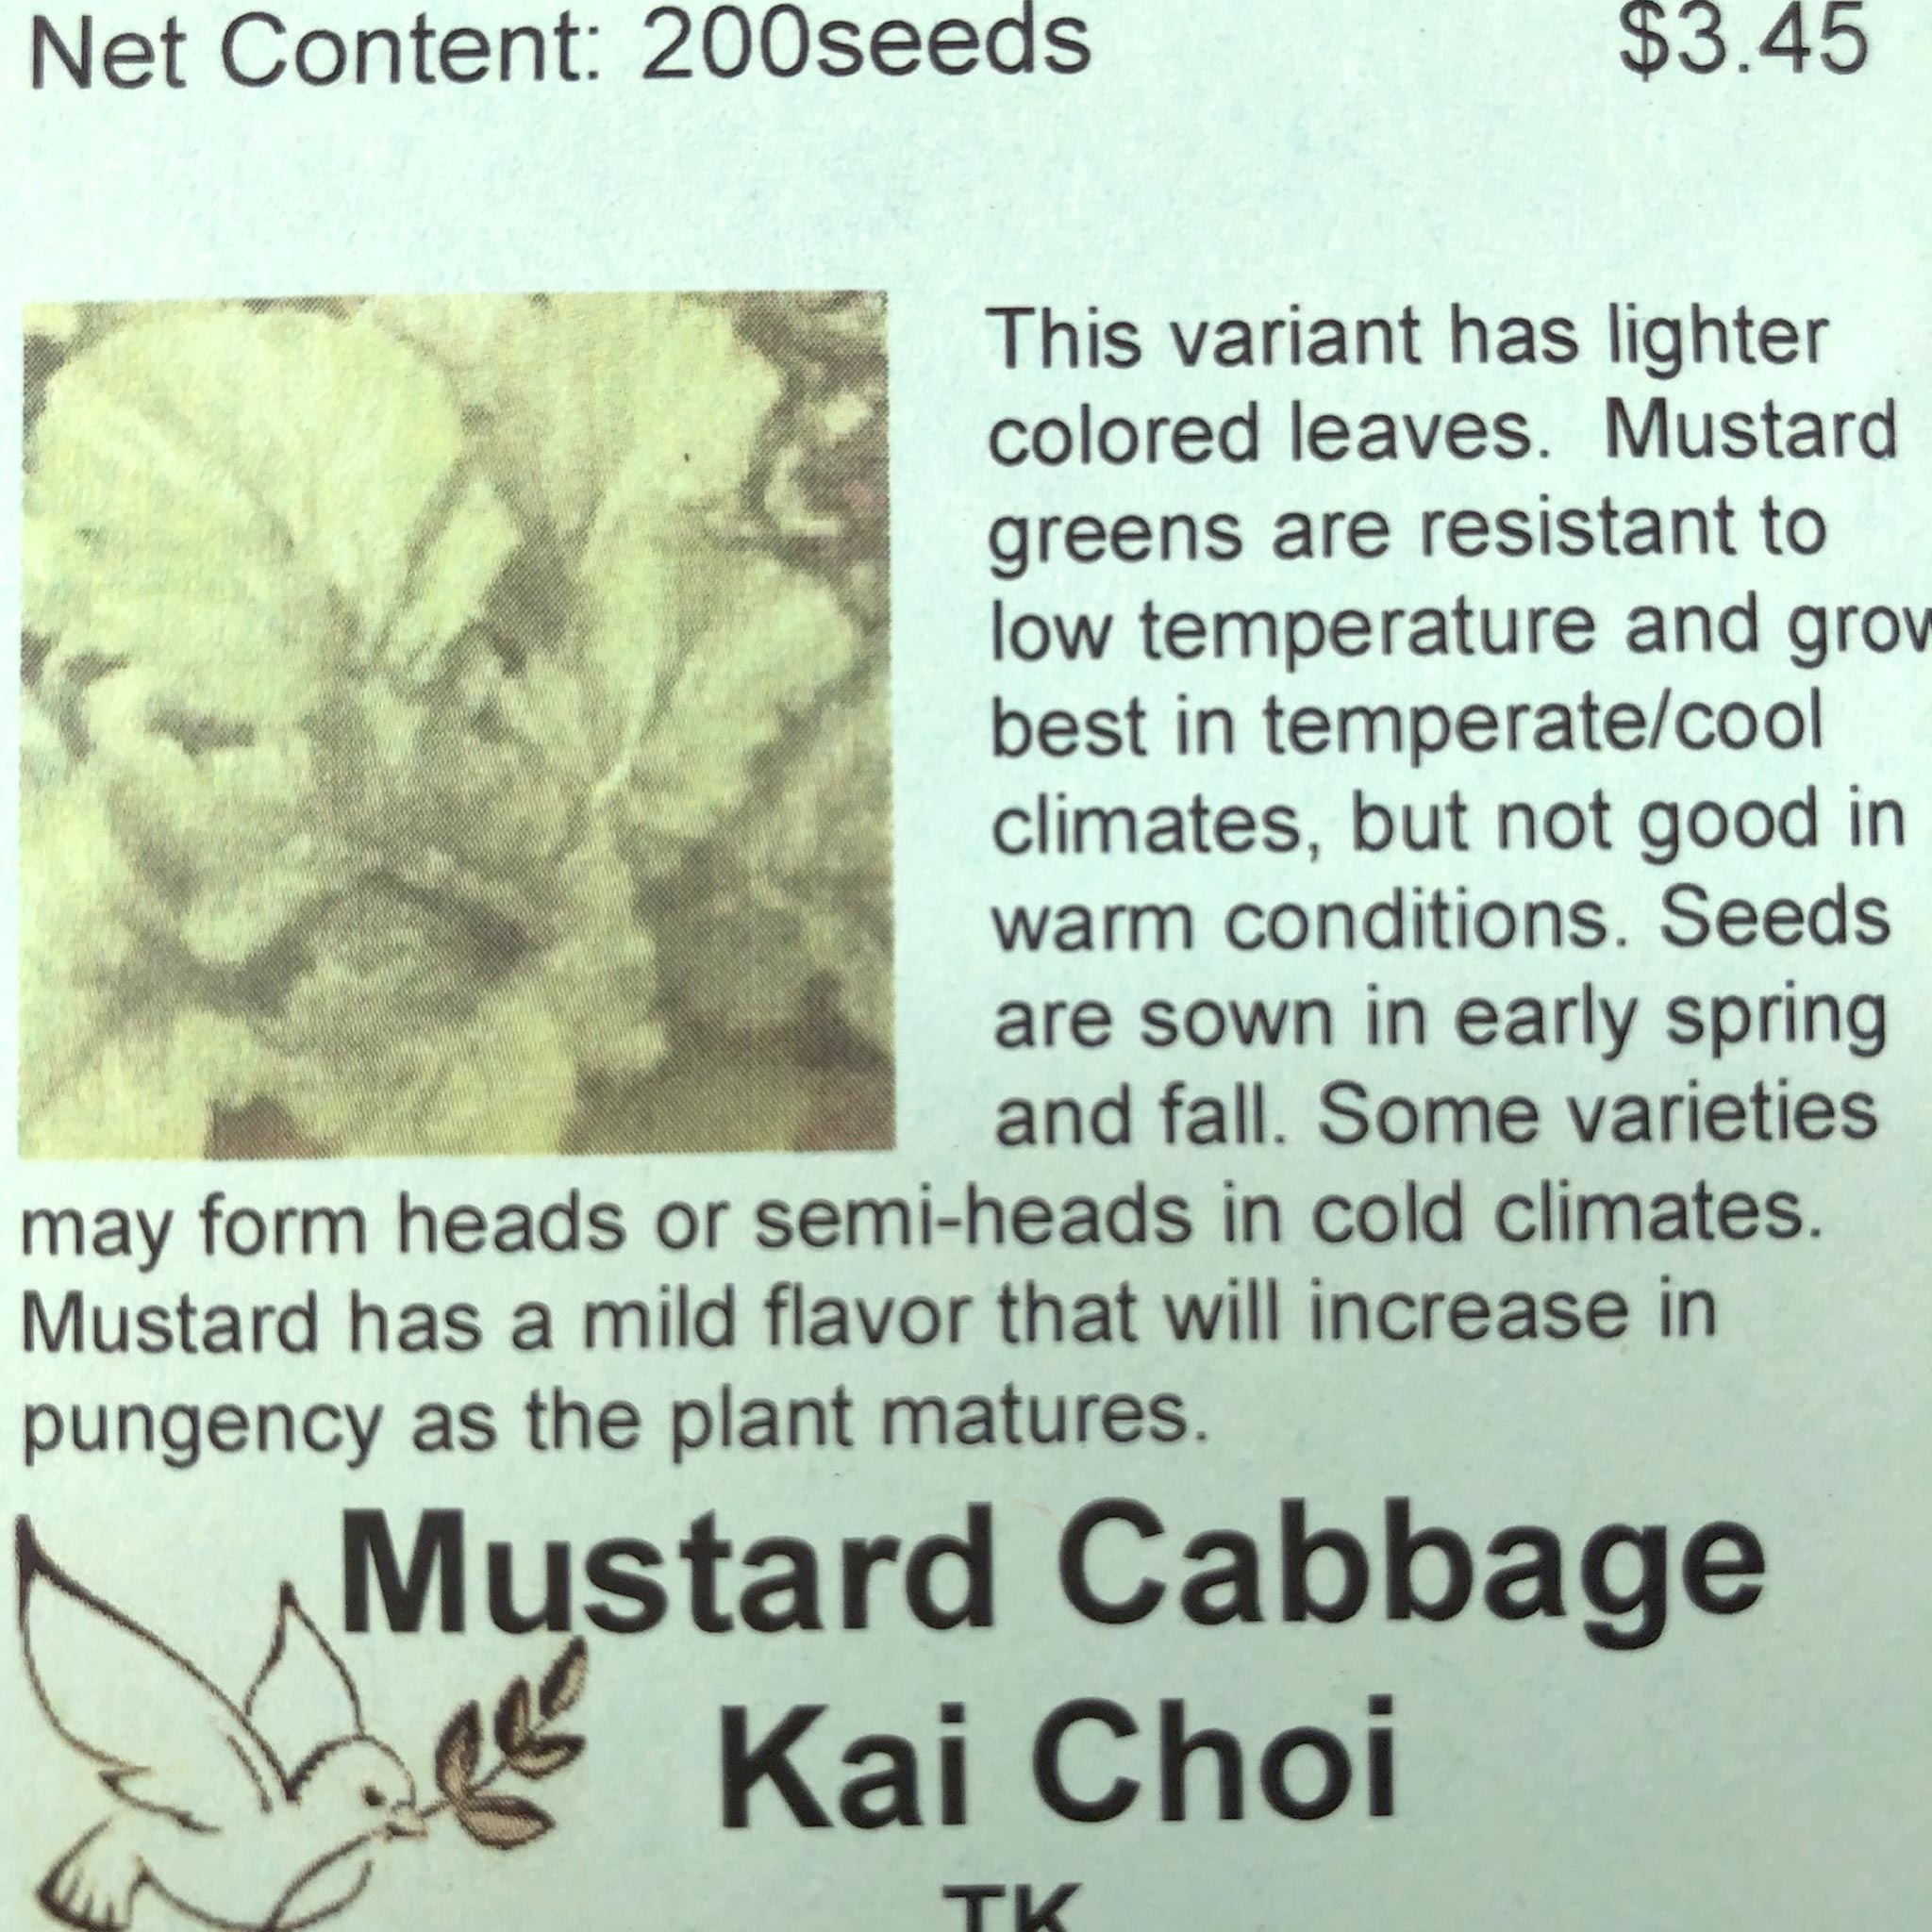 Mustard Cabbage, Kai Choi